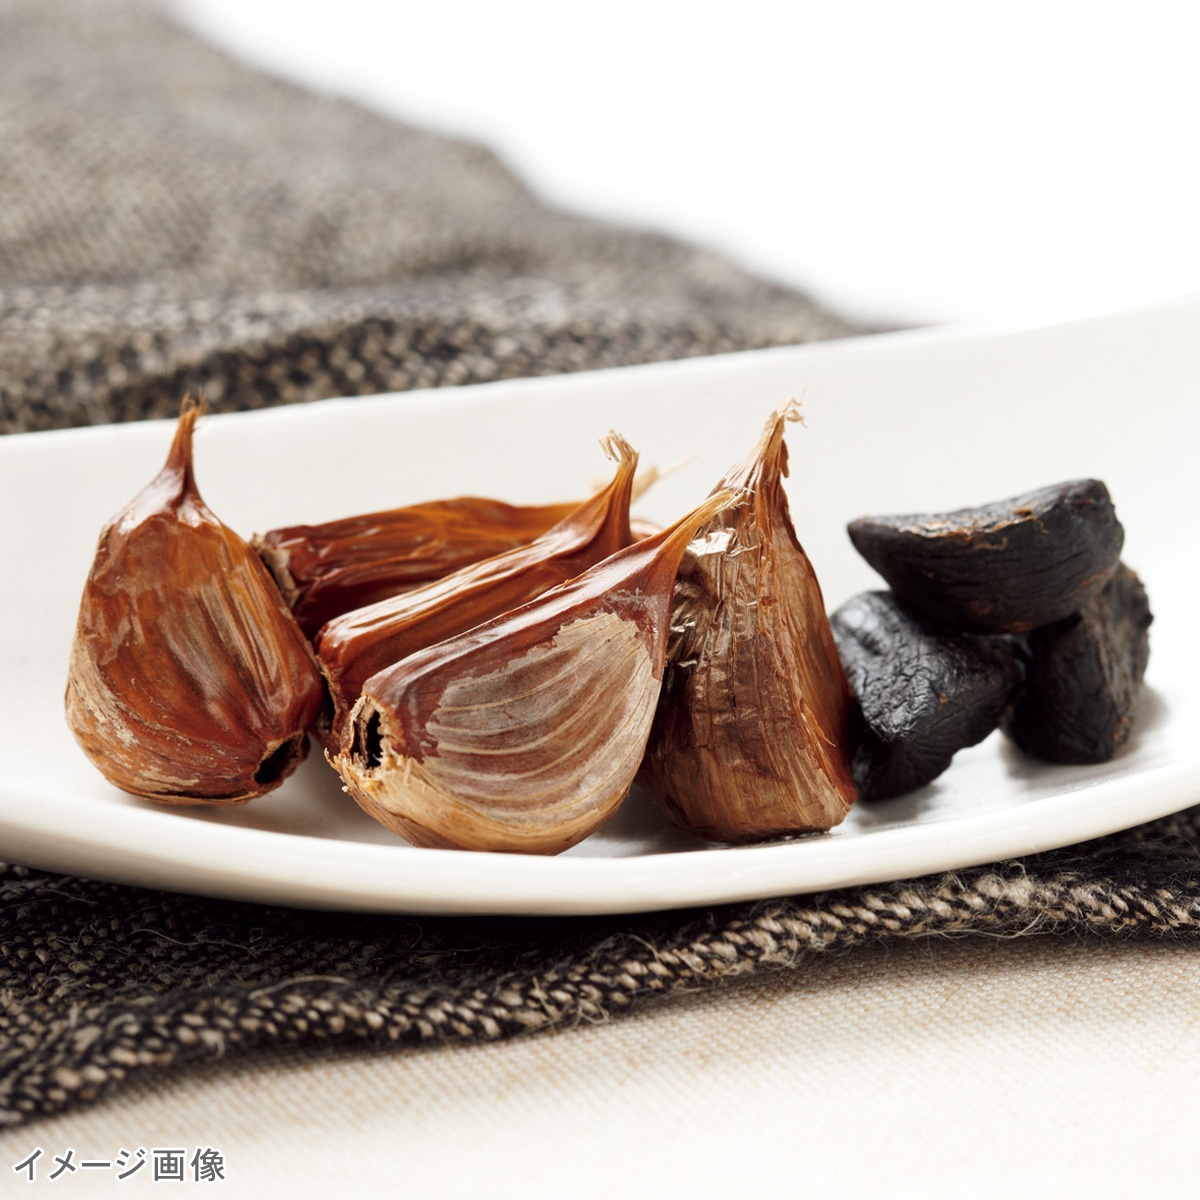 醗酵熟成 黒にんにく 10袋[1kg] - QVC.jp